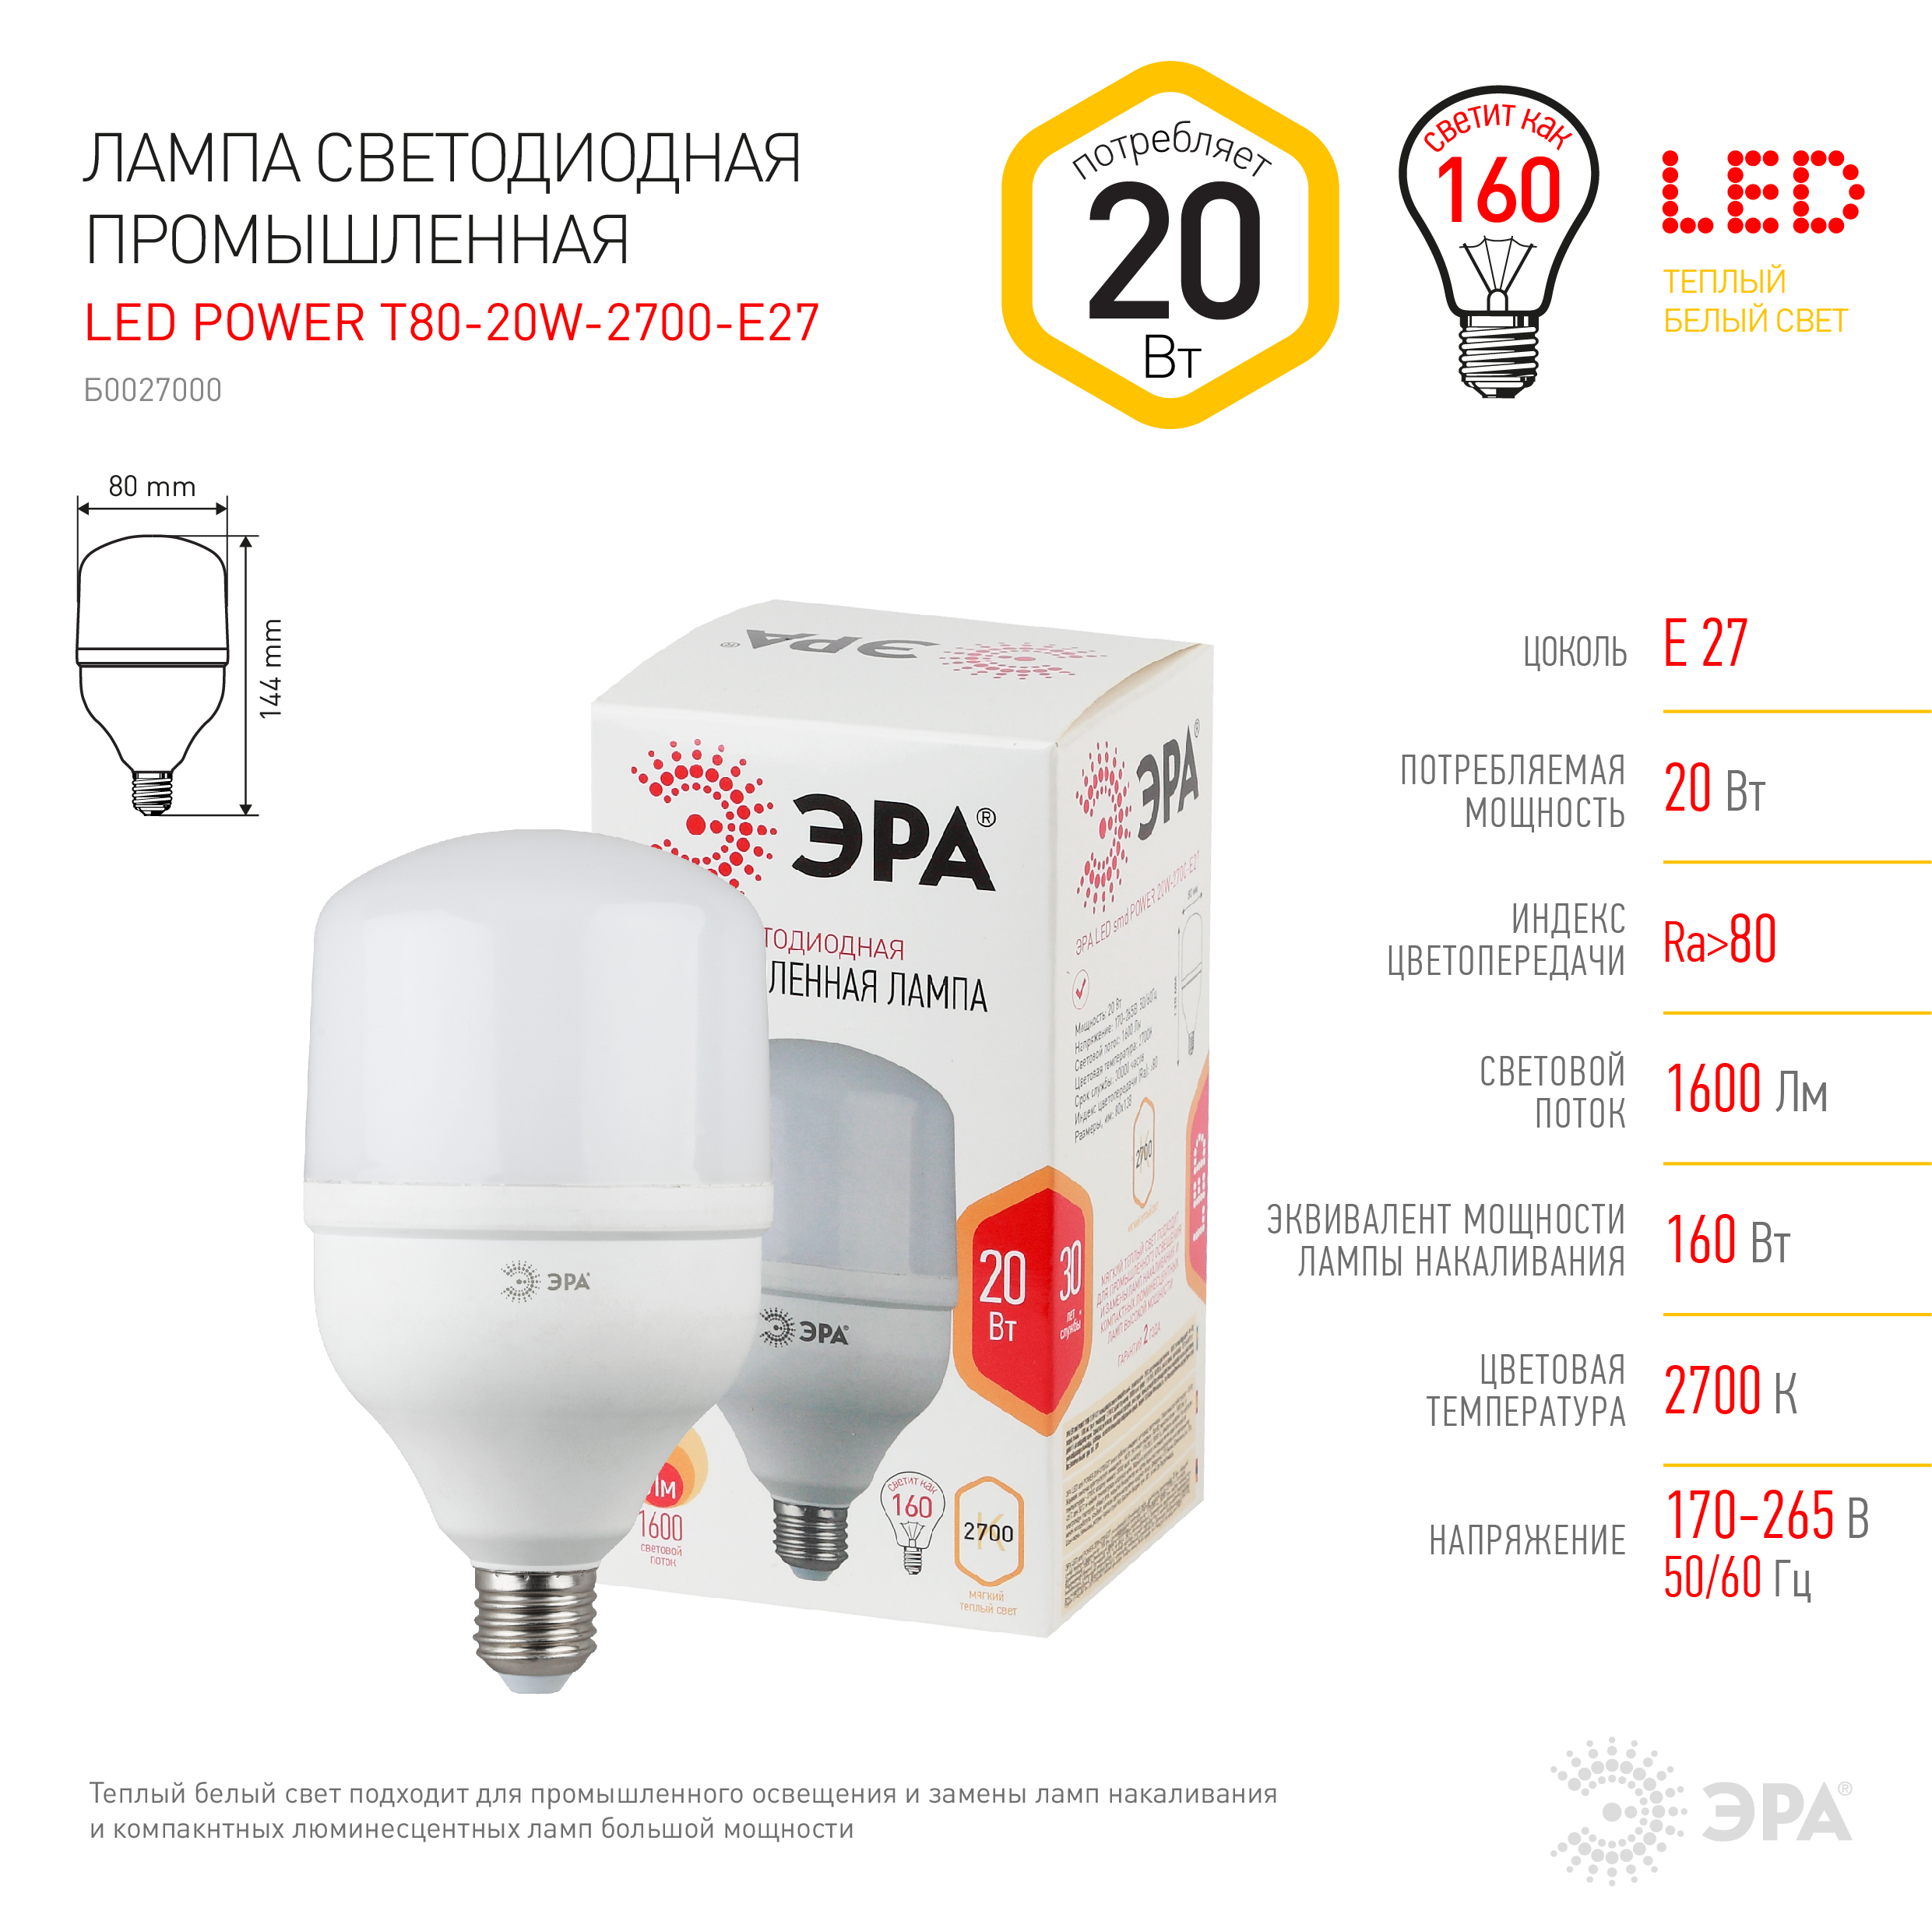  светодиодная ЭРА STD LED POWER T80-20W-2700-E27 E27 / Е27 20 Вт .